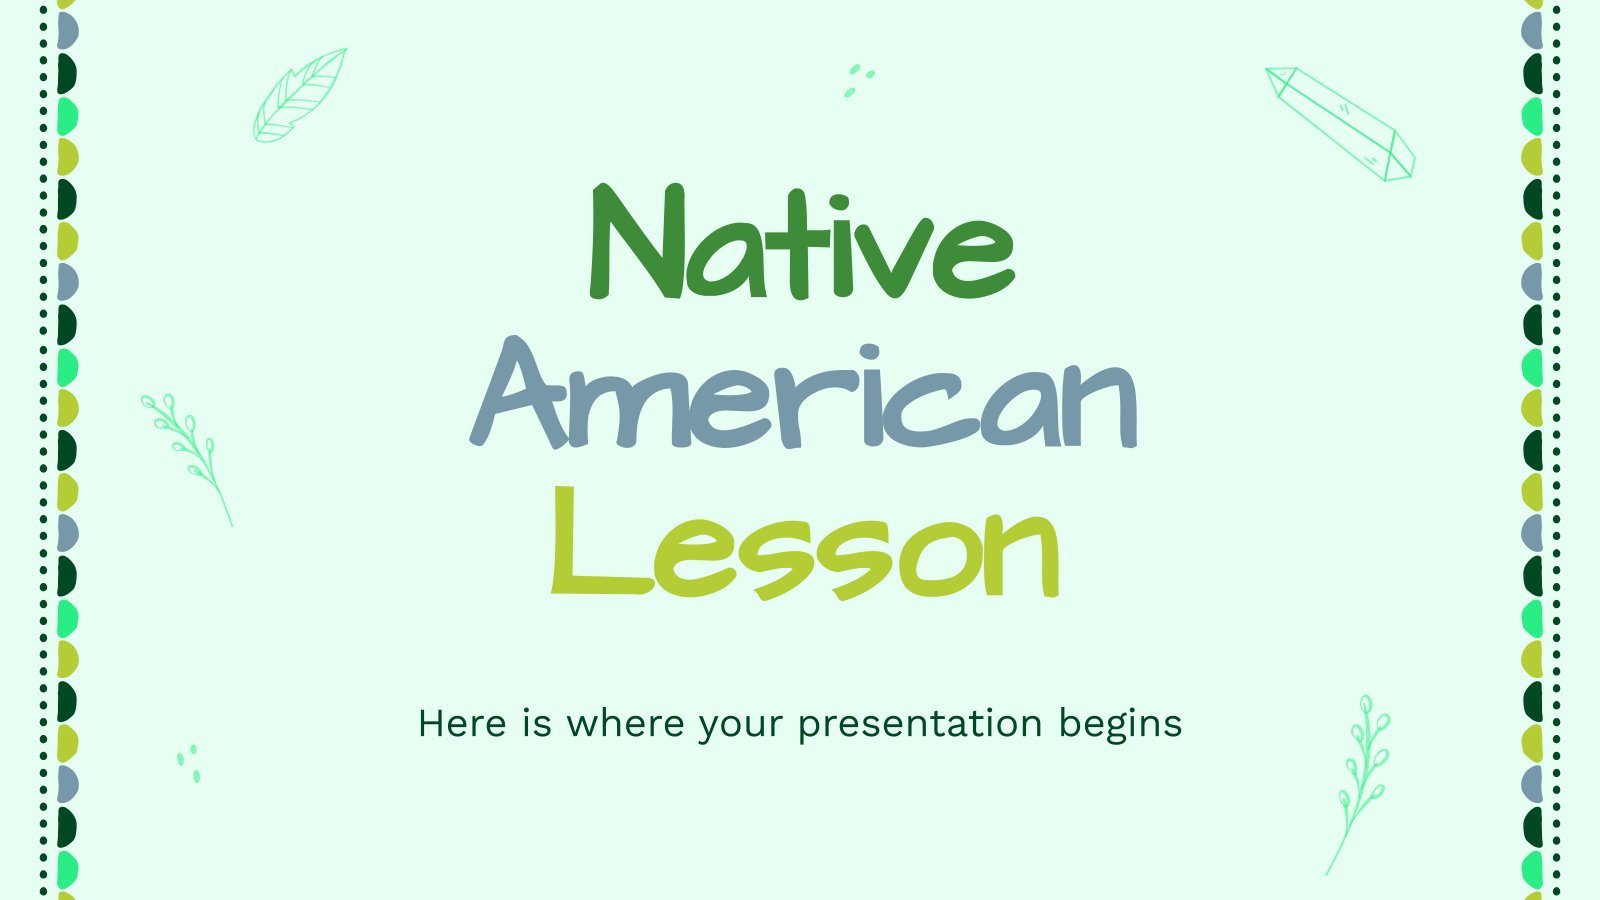 Native American Lesson presentation template 